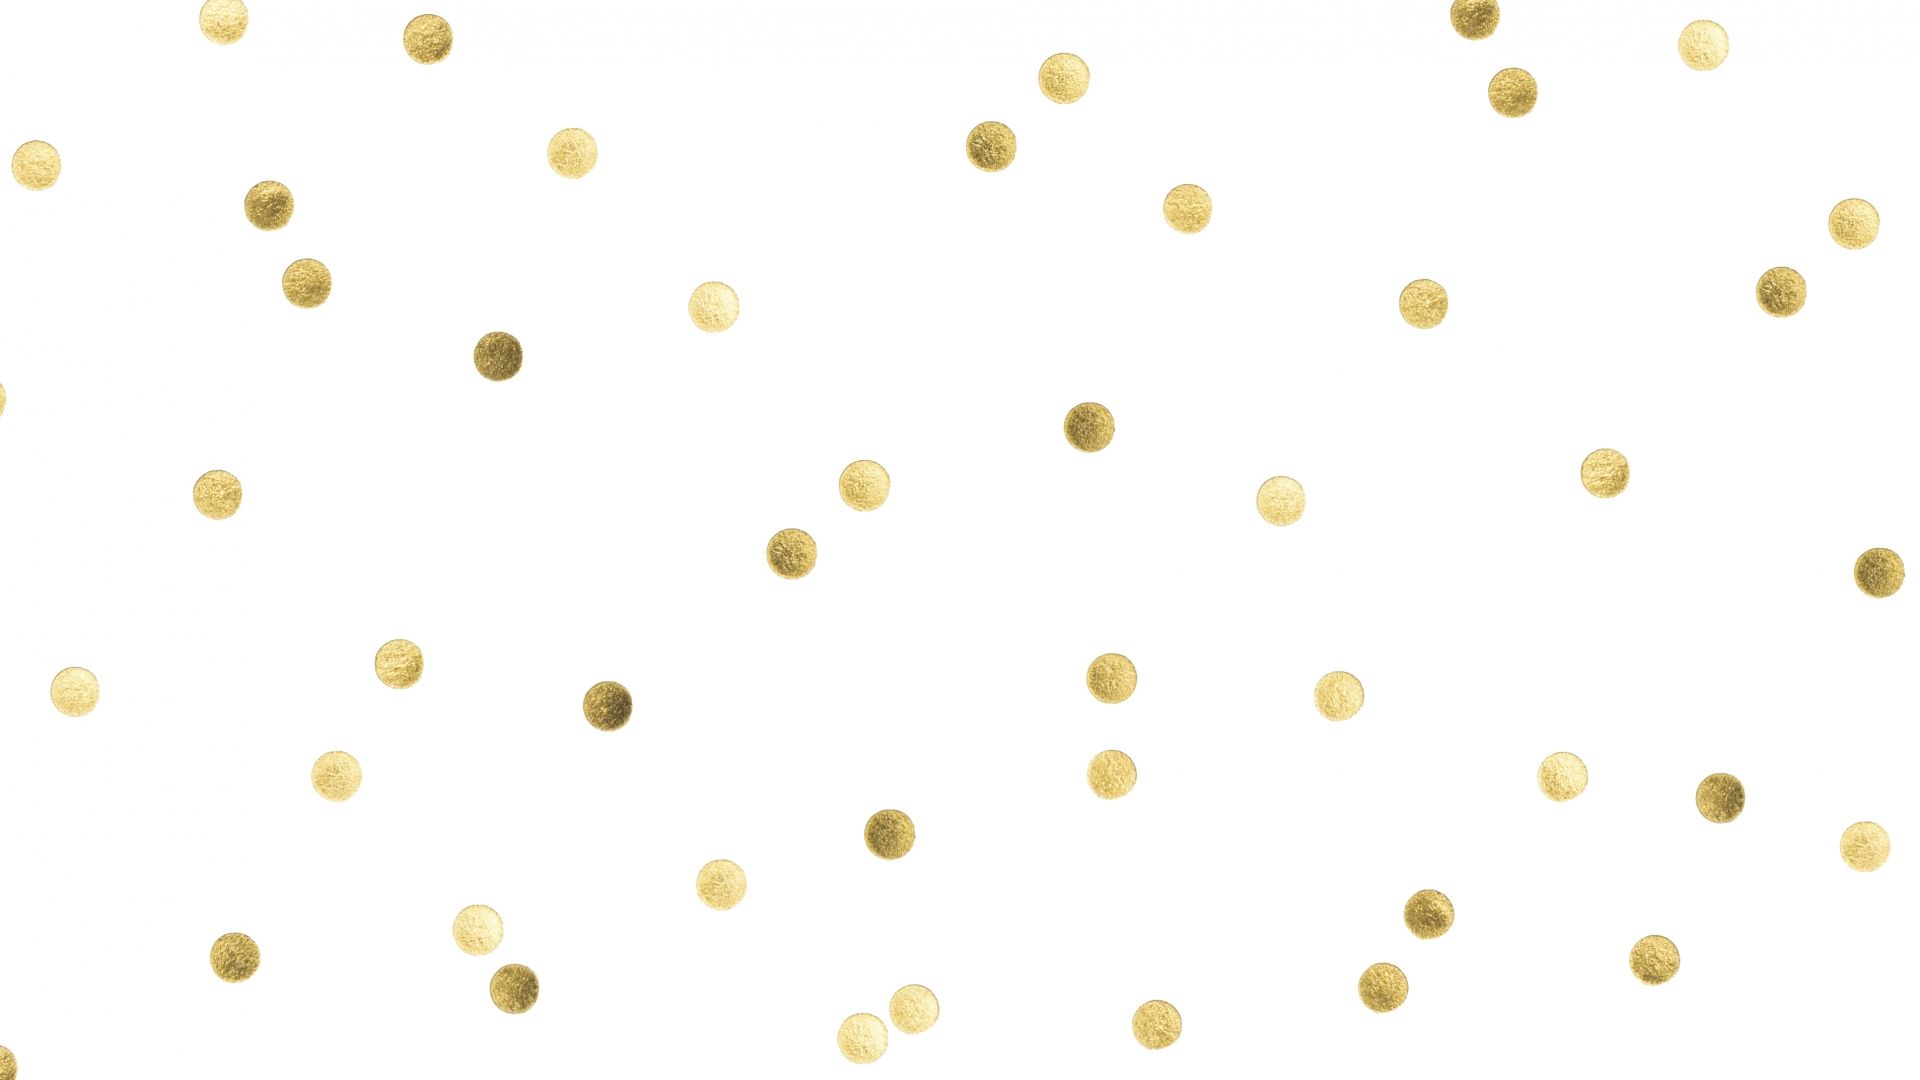 Free download gold confetti desktop wallpaper design